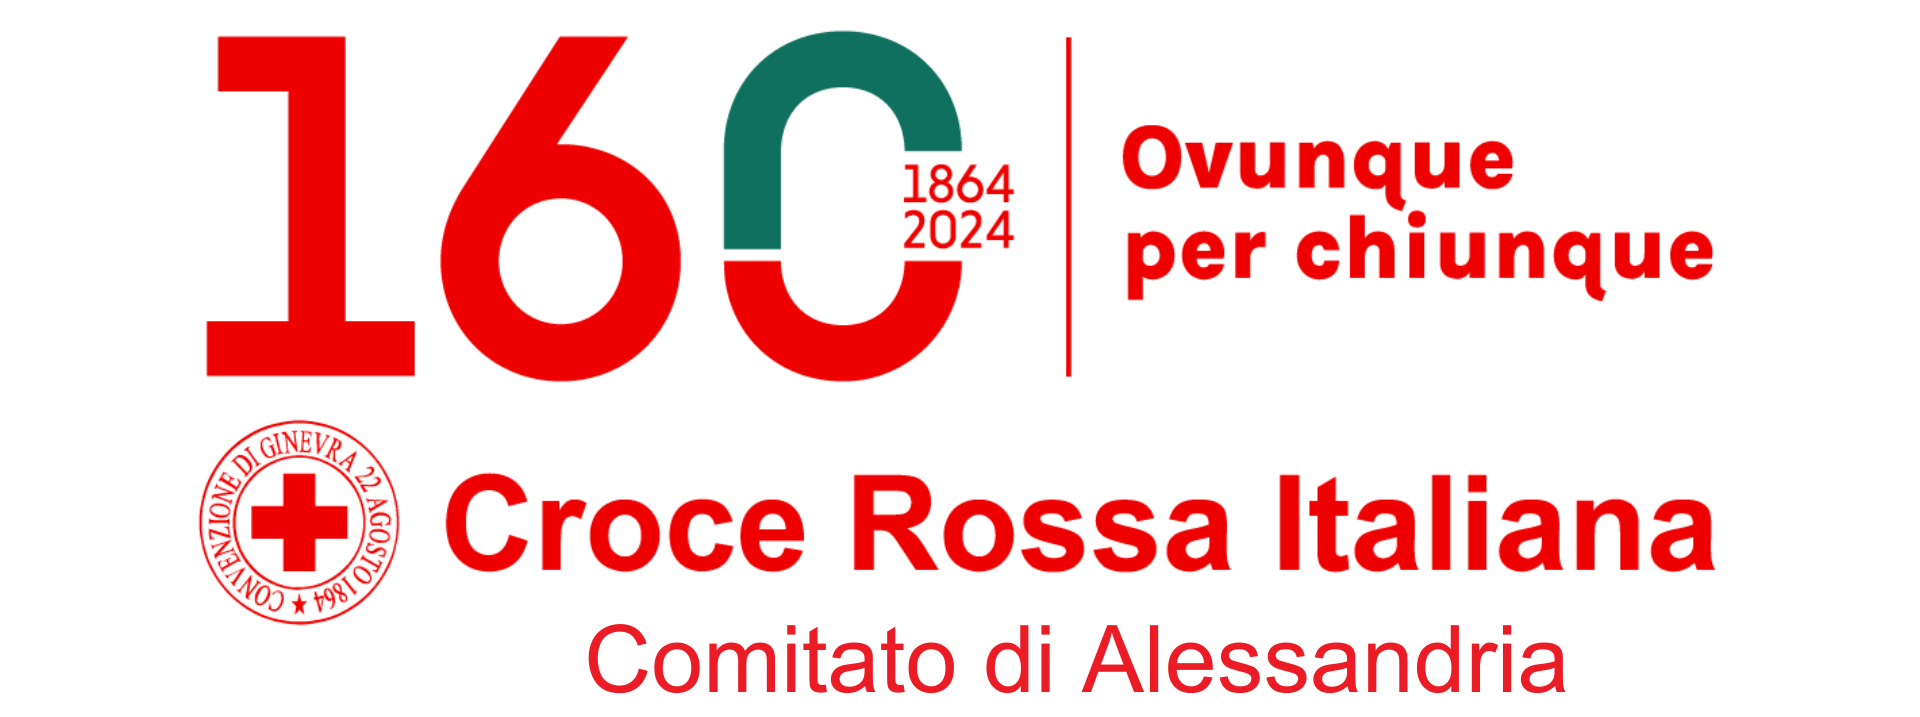 Croce Rossa Italiana - Comitato di Alessandria